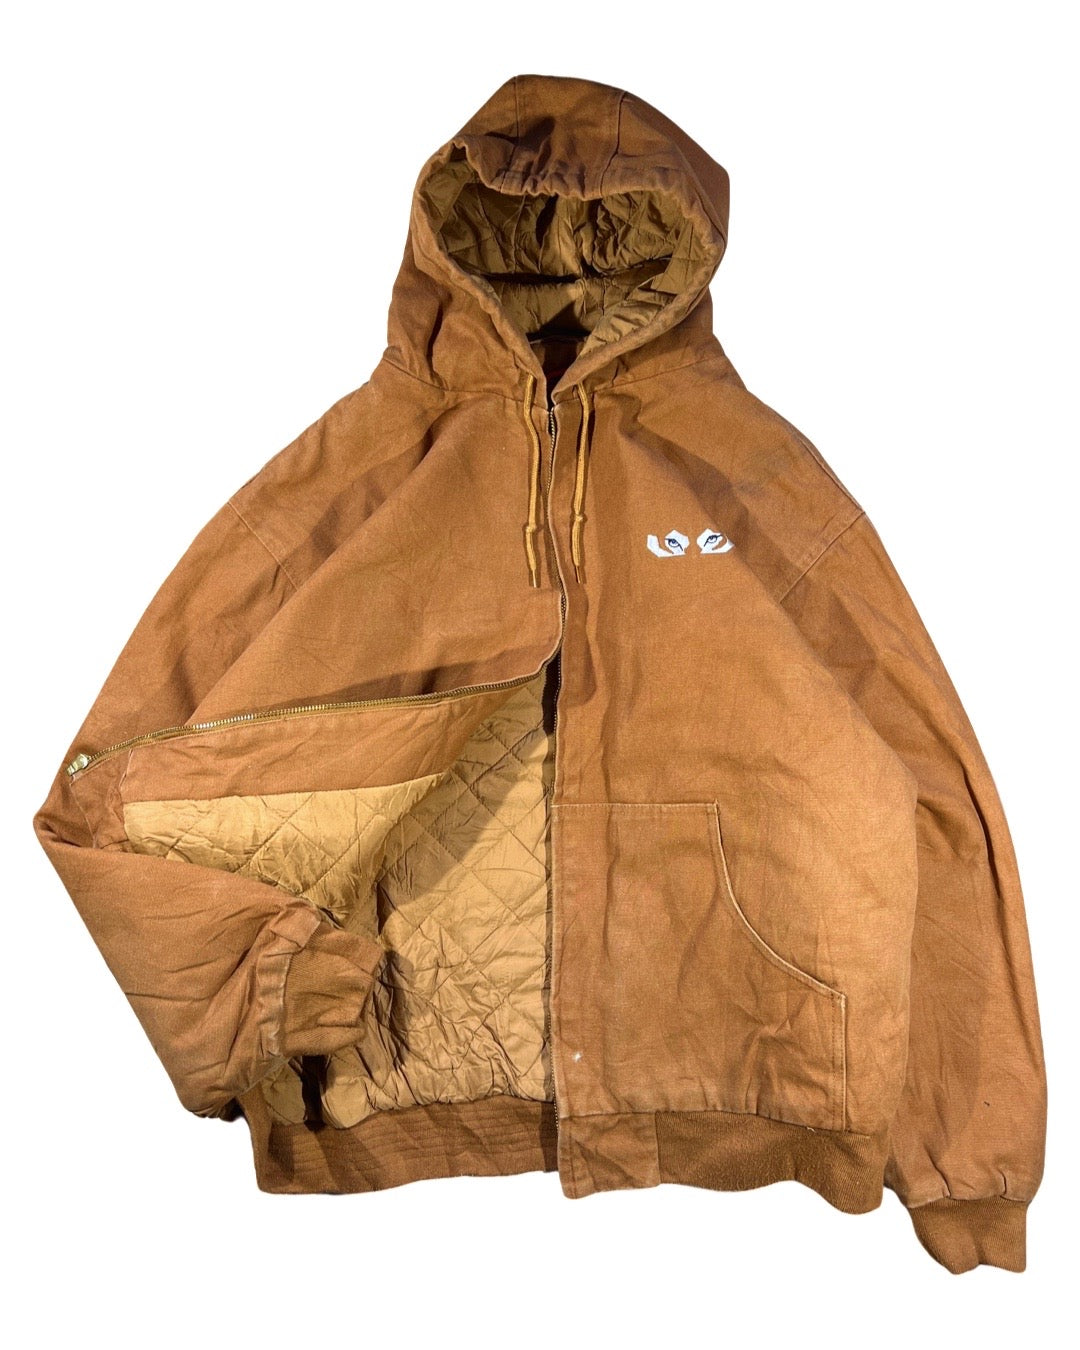 Vintage Hooded Work Jacket - 3XL